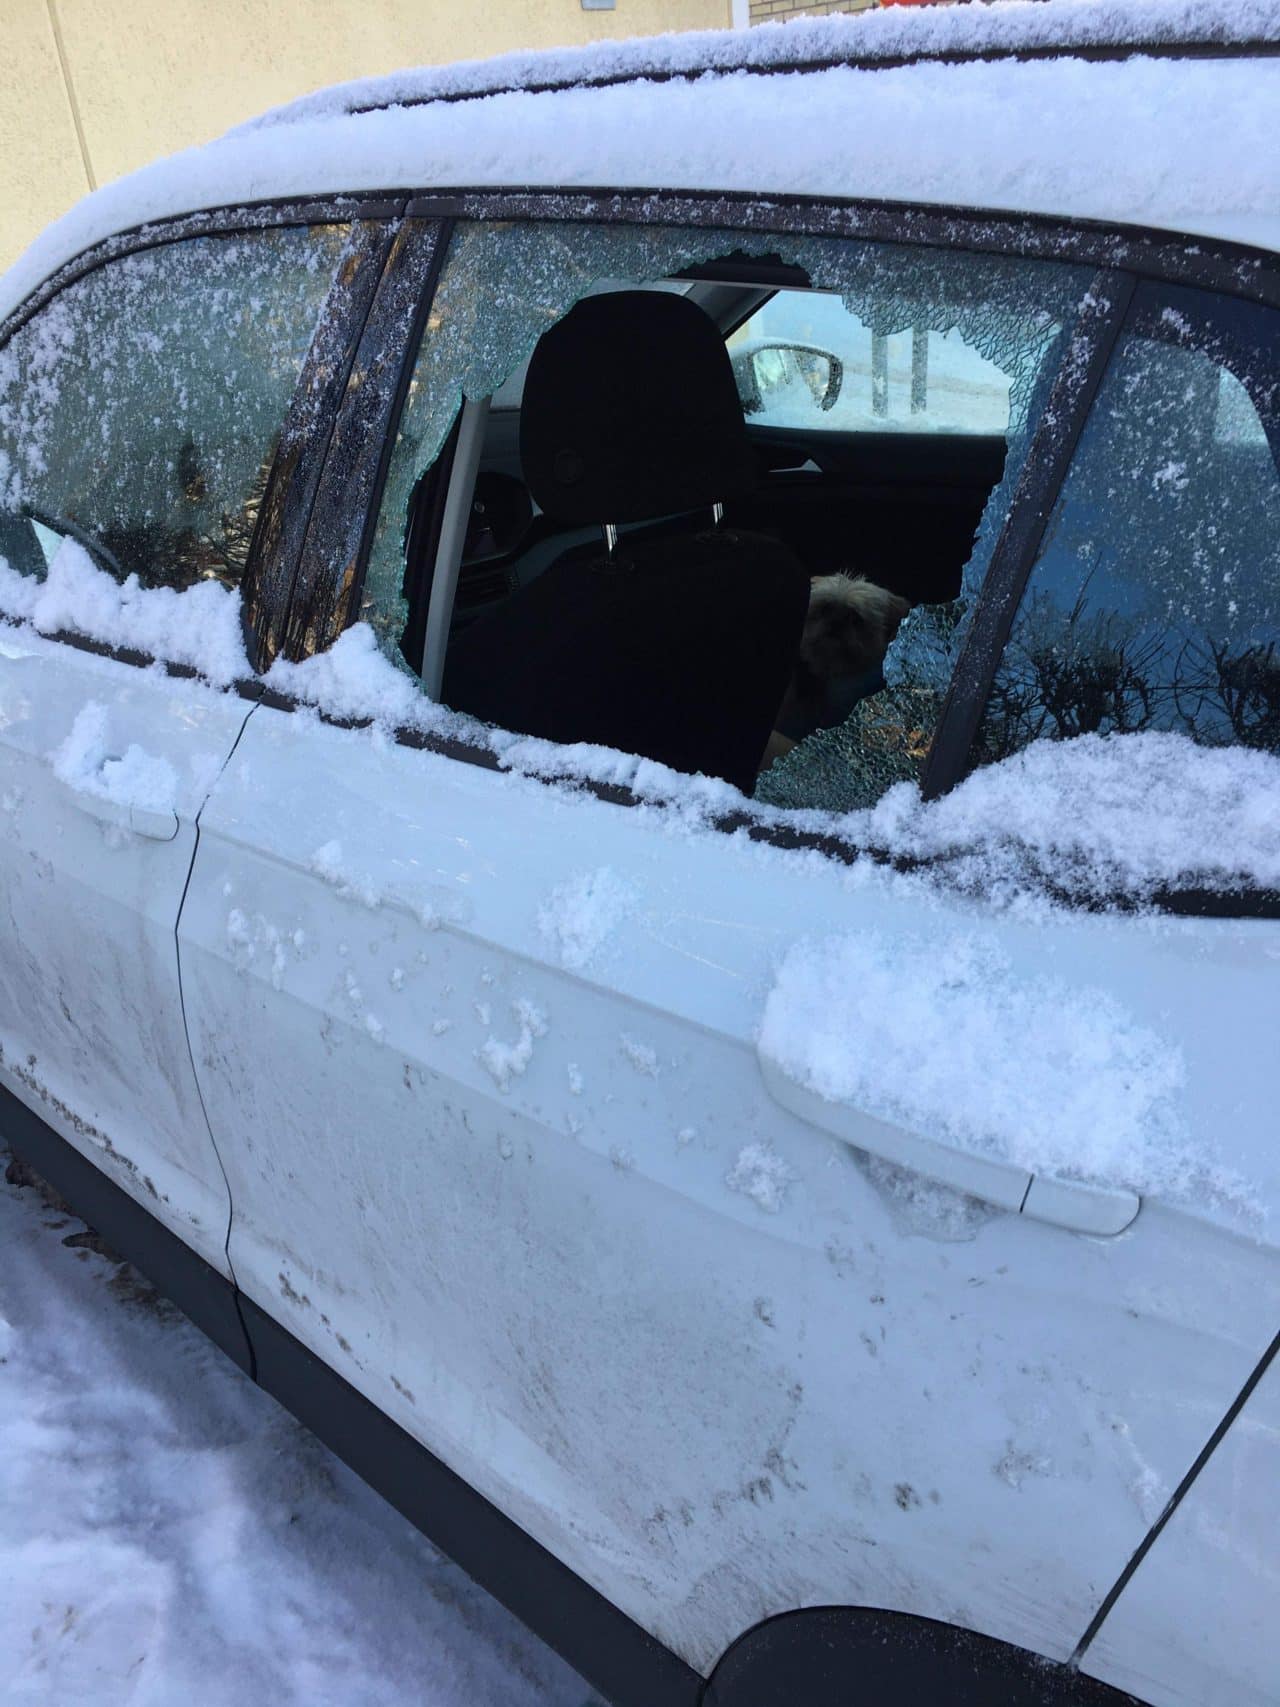 Broken Window On A Car In The Winter